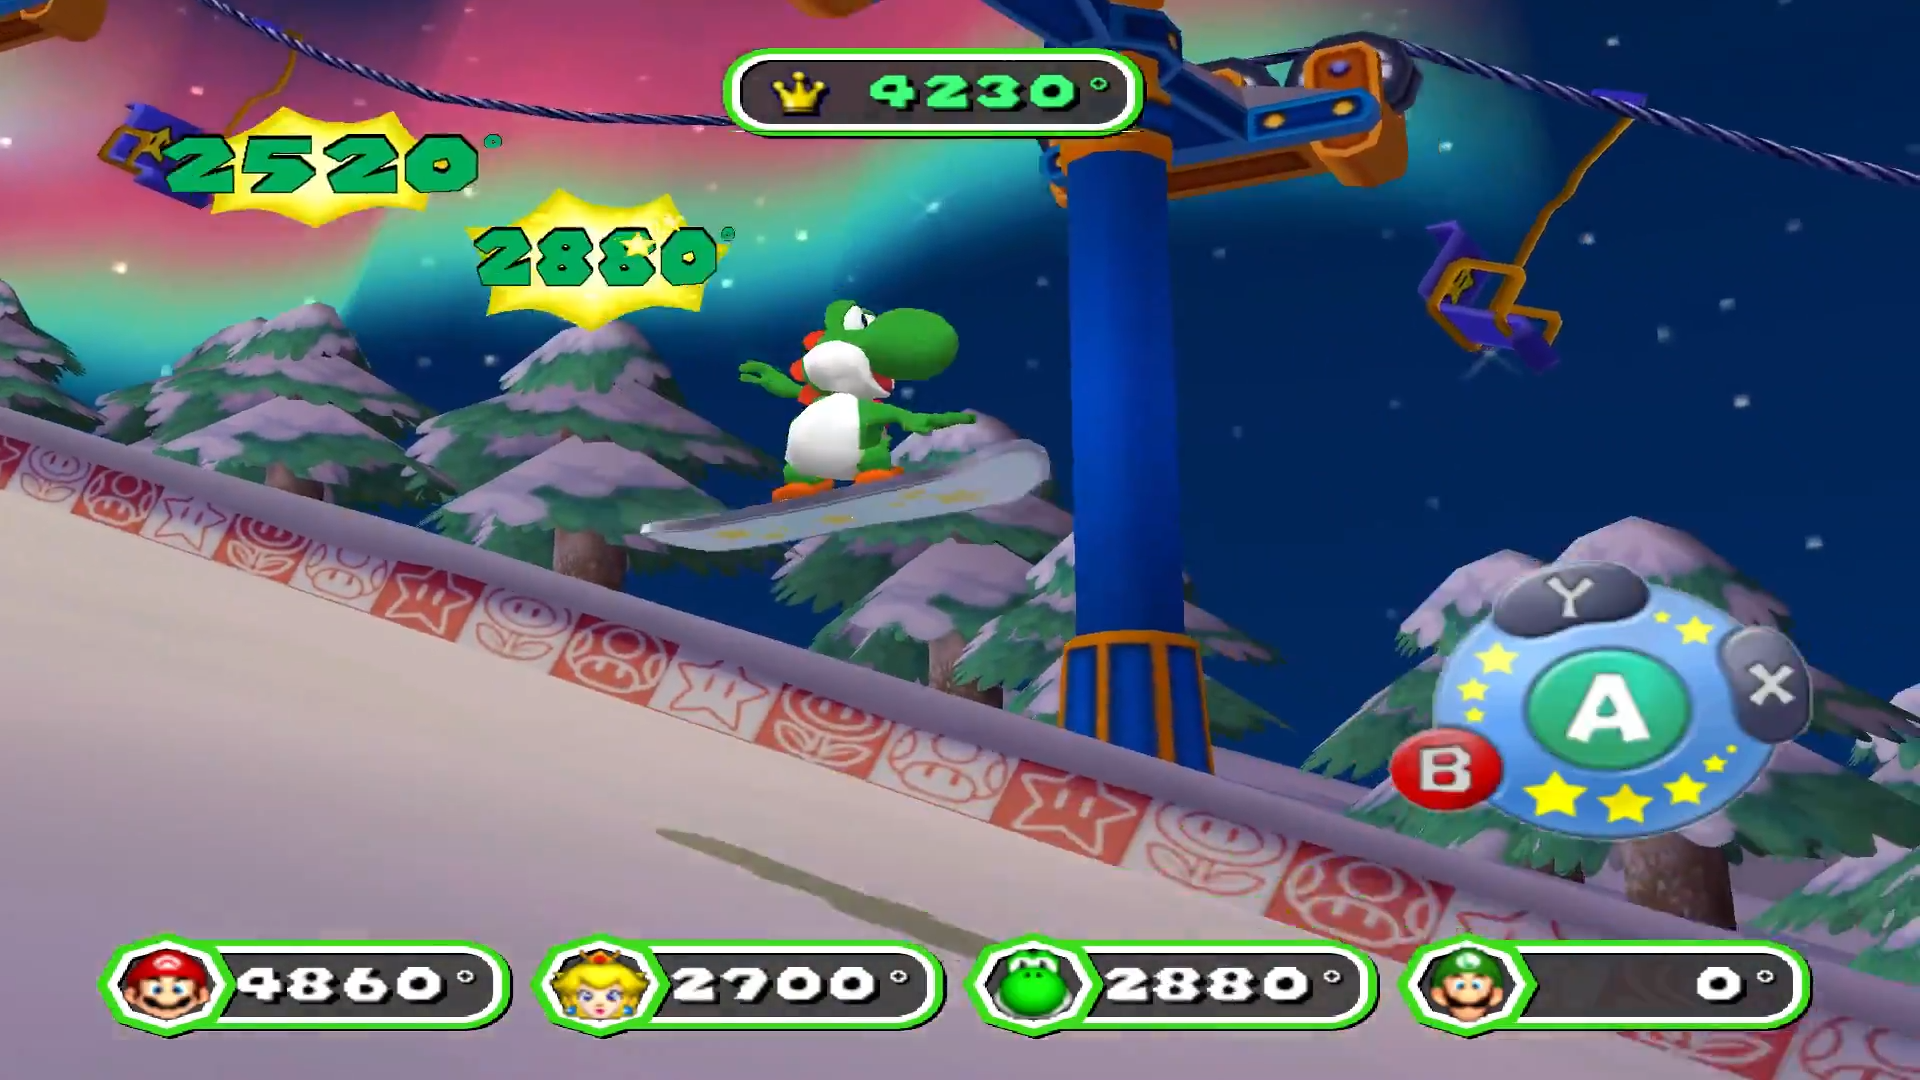 Mario Party Superstars: veja gameplay, minigames e mais detalhes do jogo